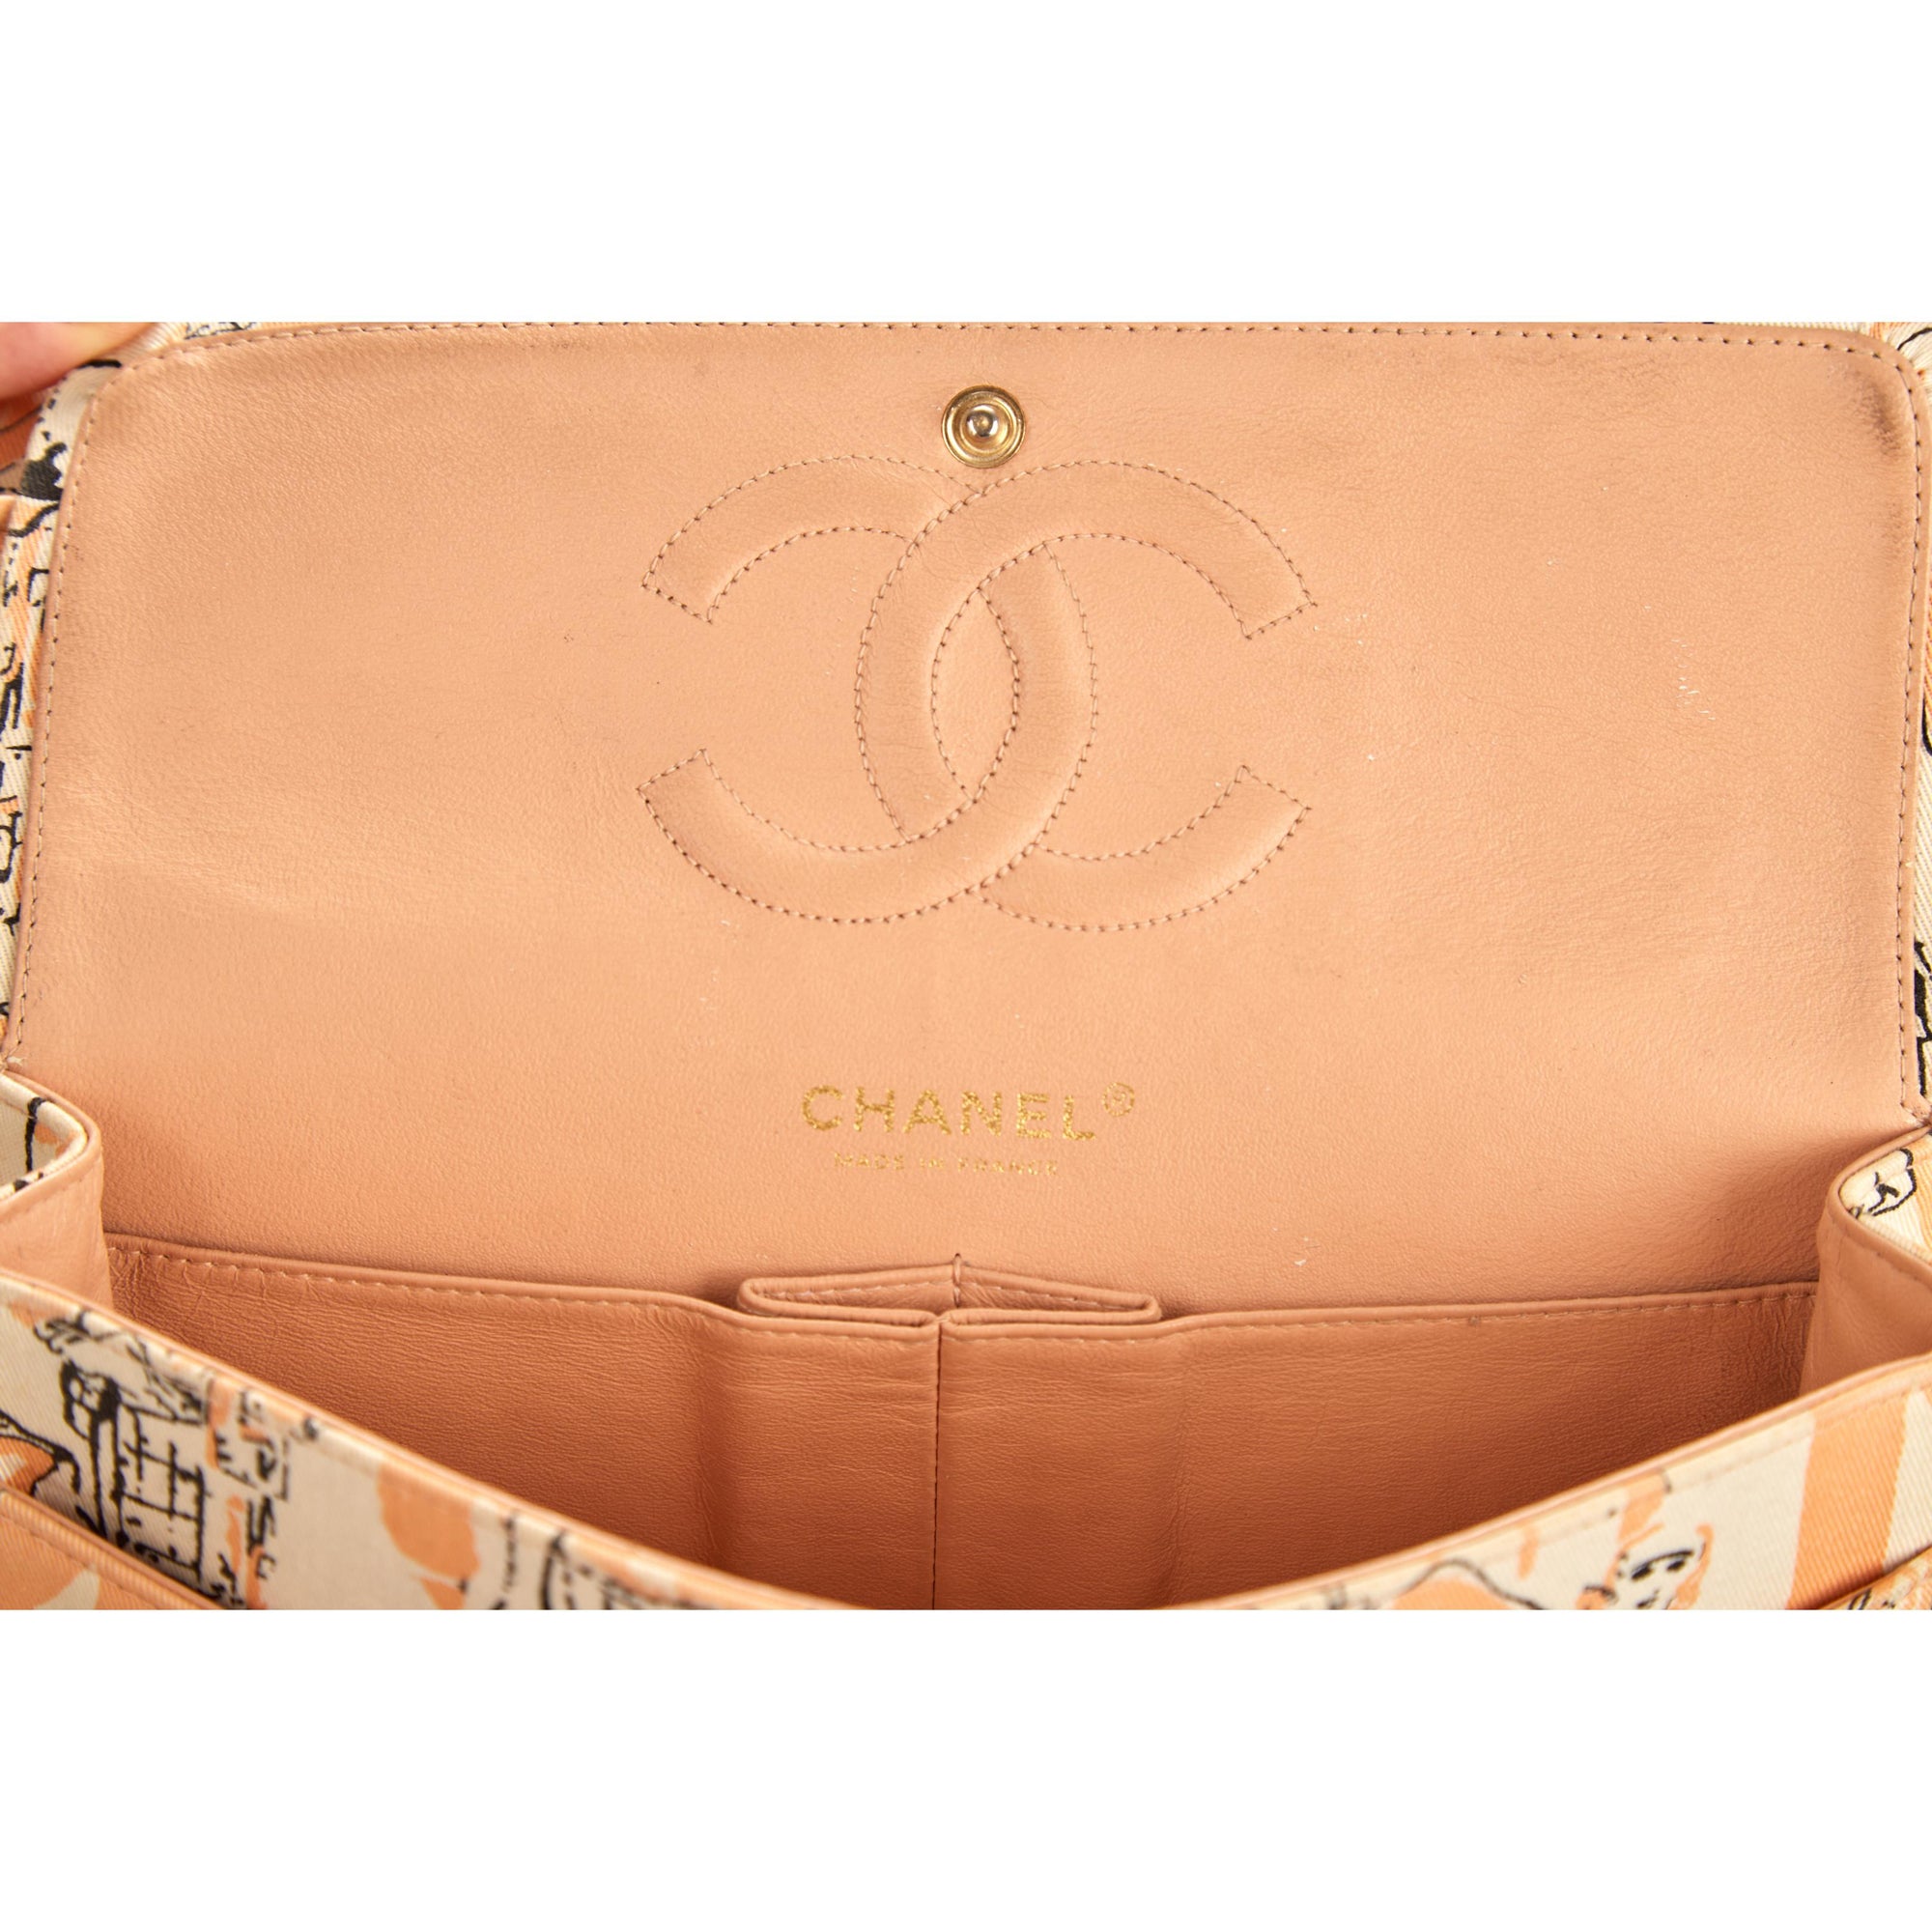 Chanel Peach Coco Print Flap Bag